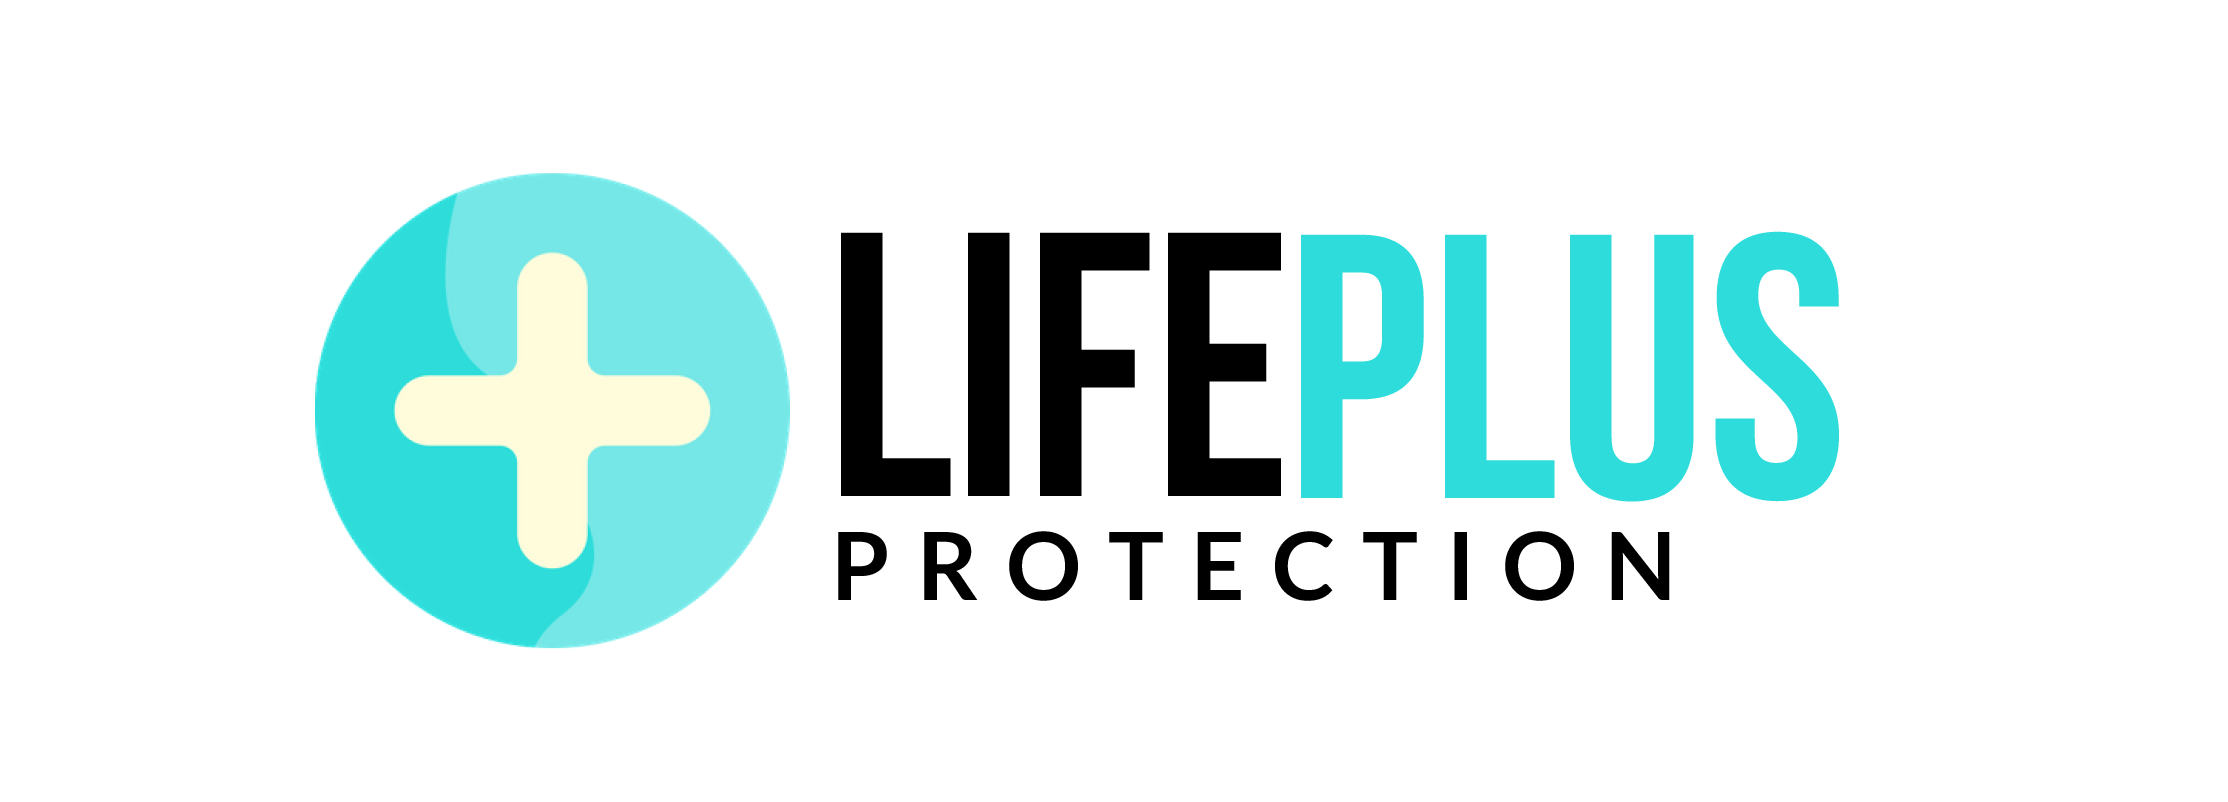 Lifeplus logo